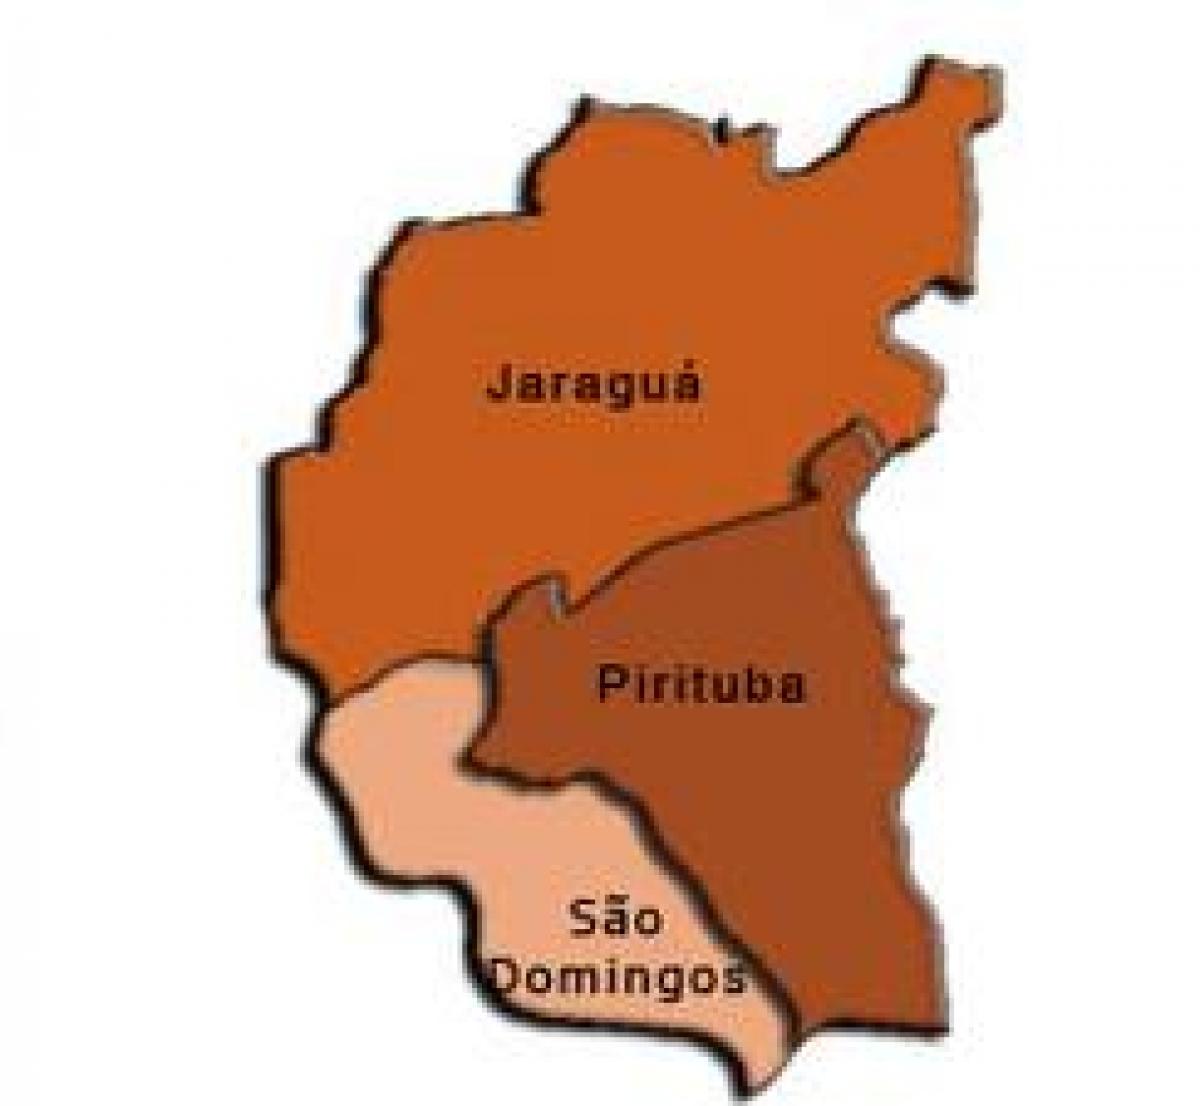 地图Pirituba-碳排放最少的子县